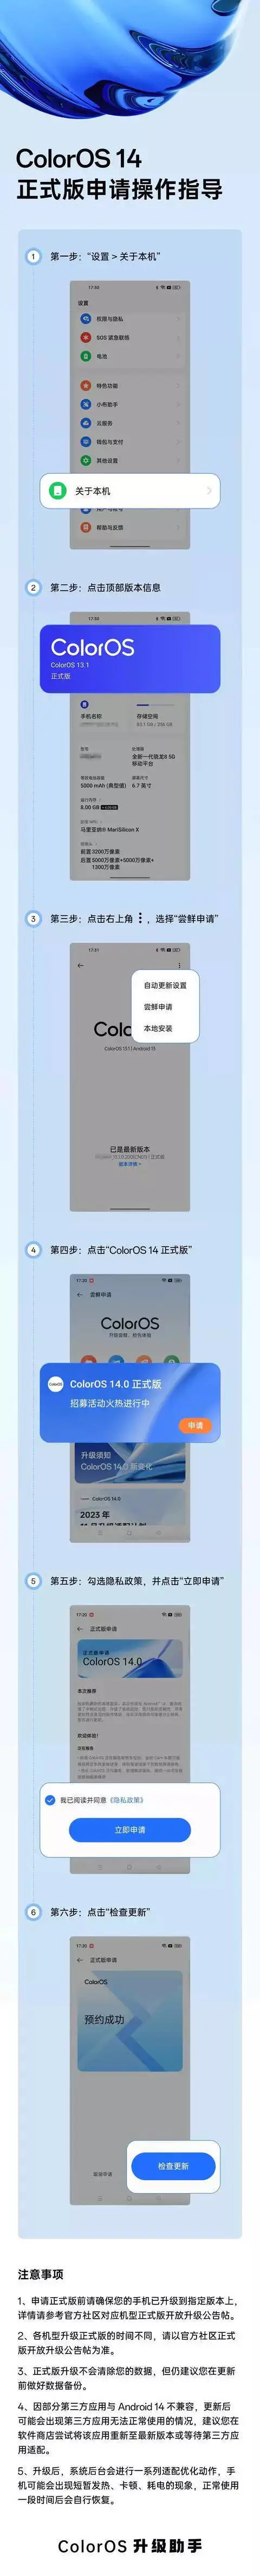 OPPO向多款机型推送ColorOS14正式版 咋申请，有啥亮点?了如指掌 第1张图片